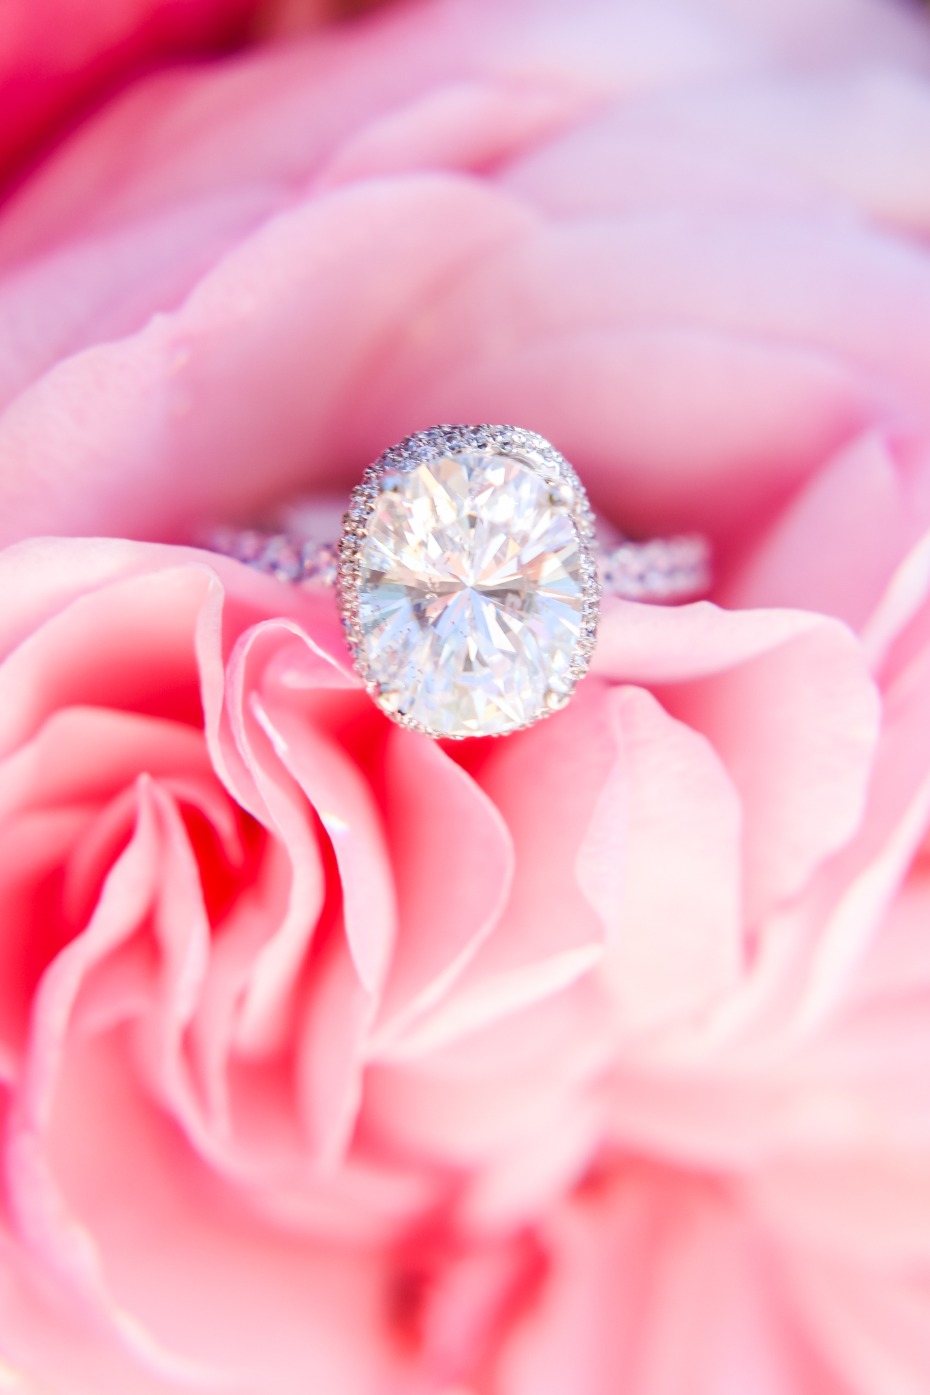 Gorgeous diamond ring